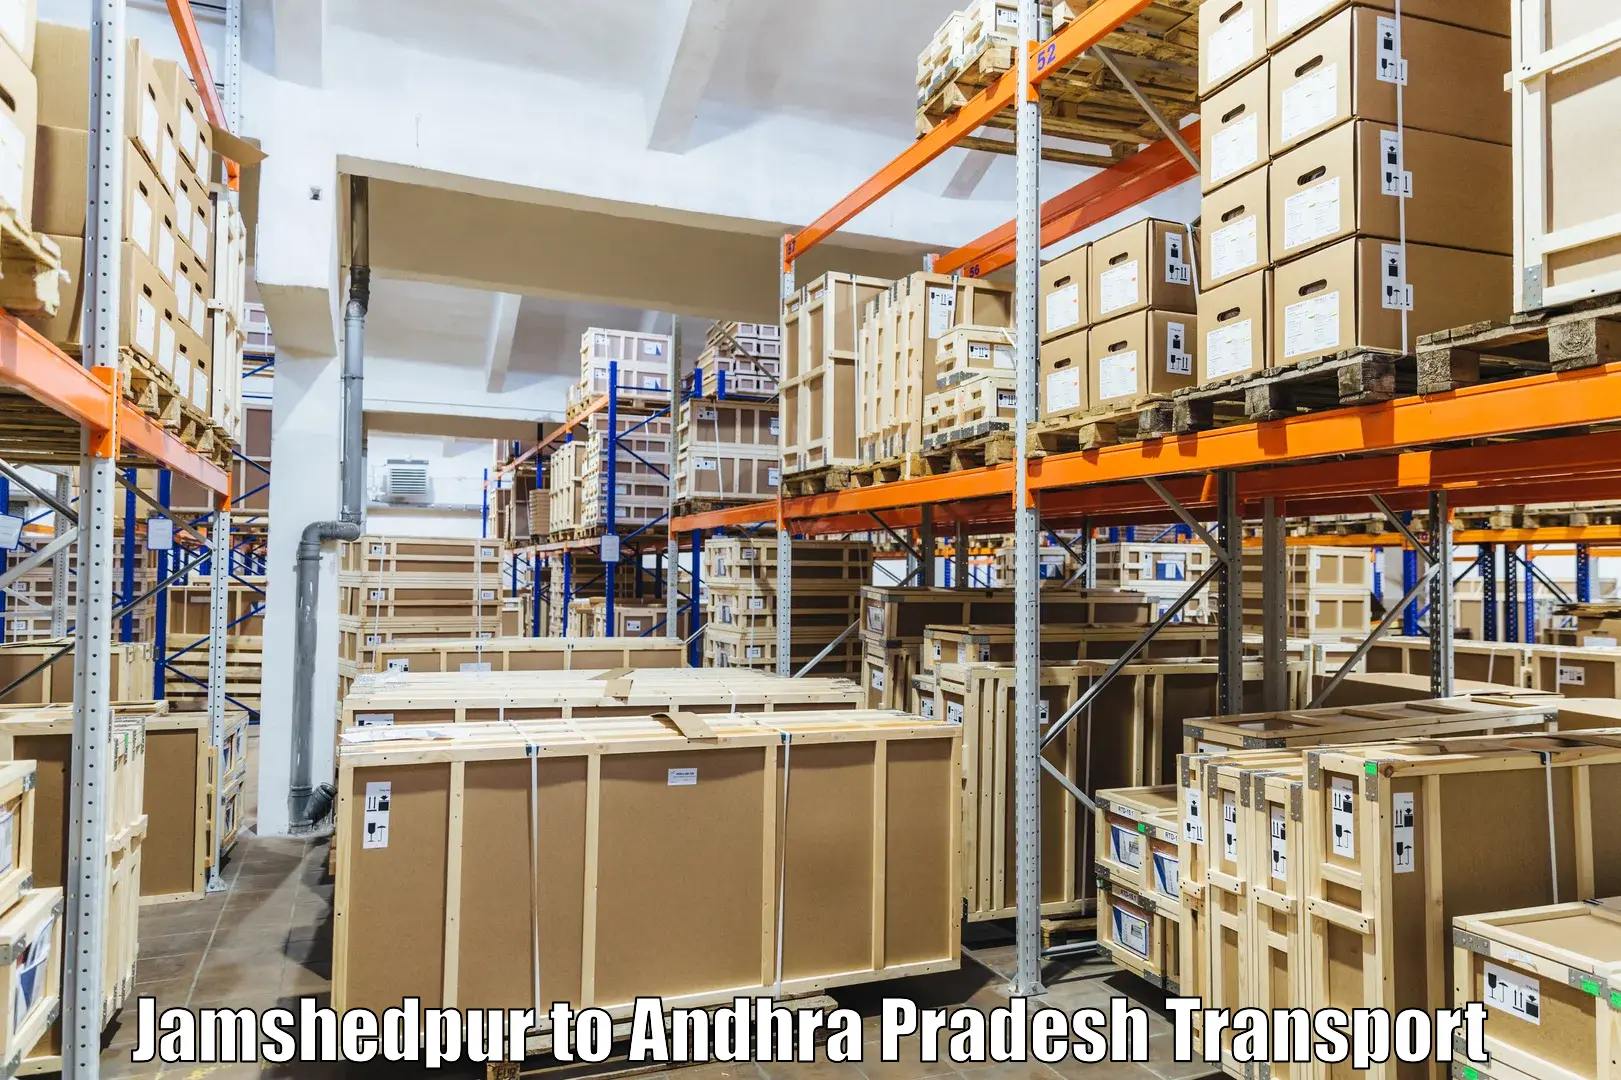 Transport shared services Jamshedpur to Andhra Pradesh